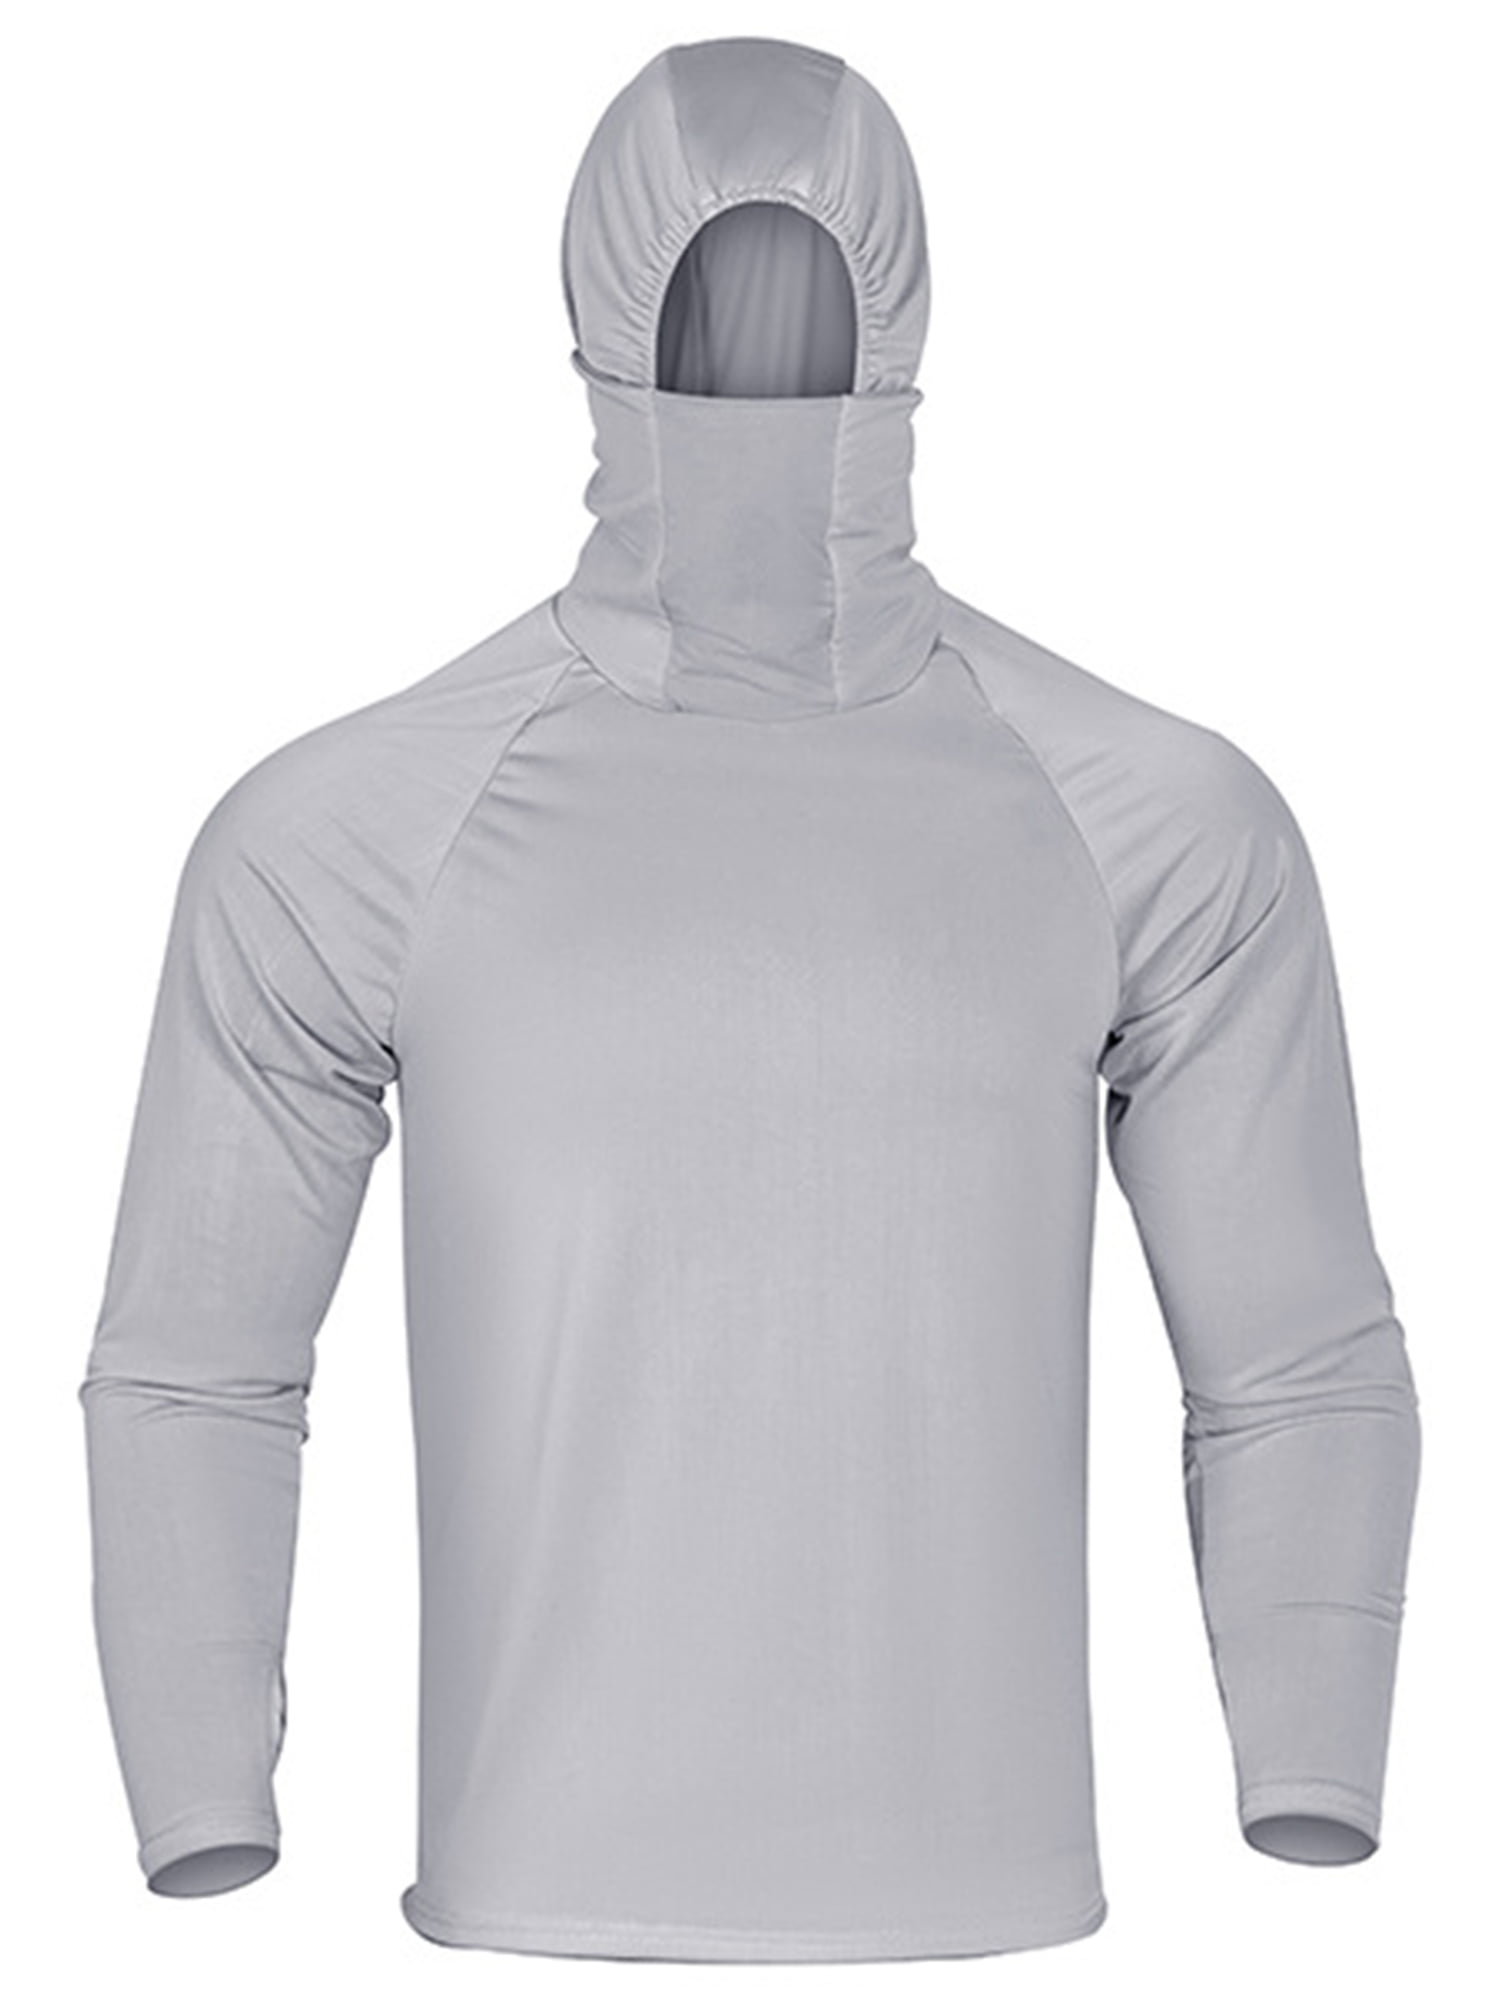 REI Vented Fishing Shirt Mens 3XL Gray Lightweight Long Sleeve Roll Cuff  Outdoor